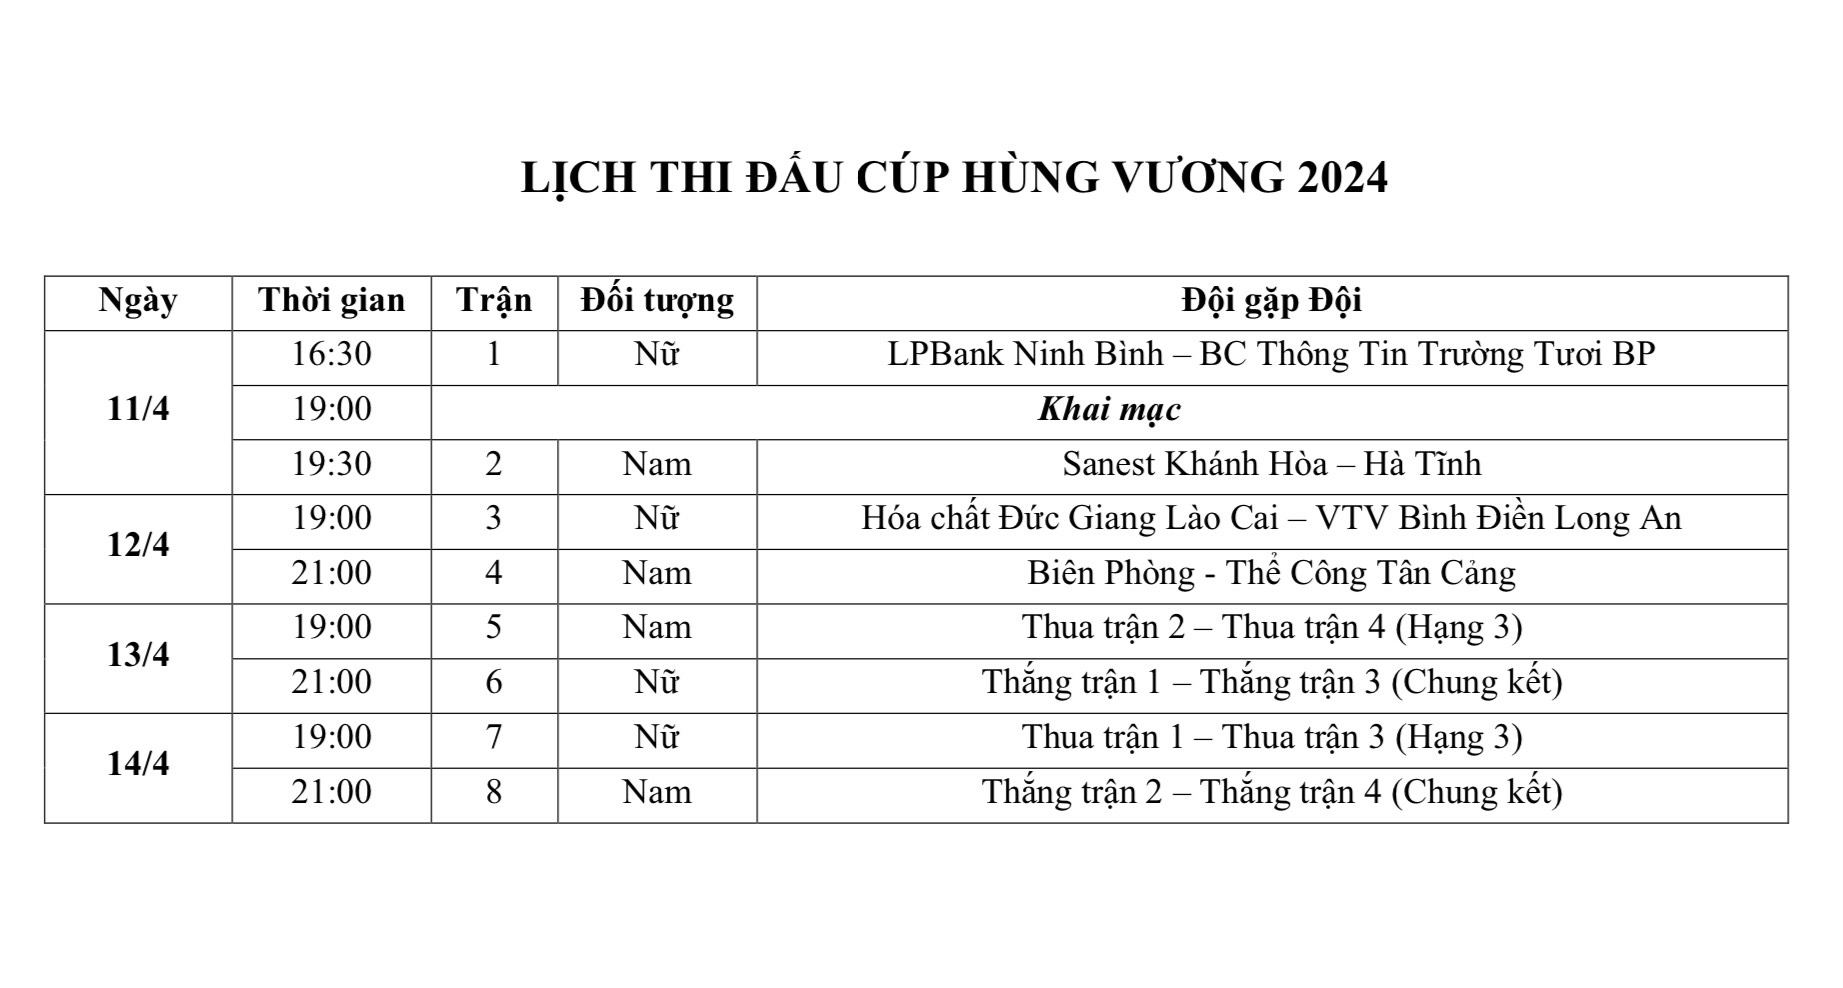 Mở bán vé xem bóng chuyền Cúp Hùng Vương năm 2024.